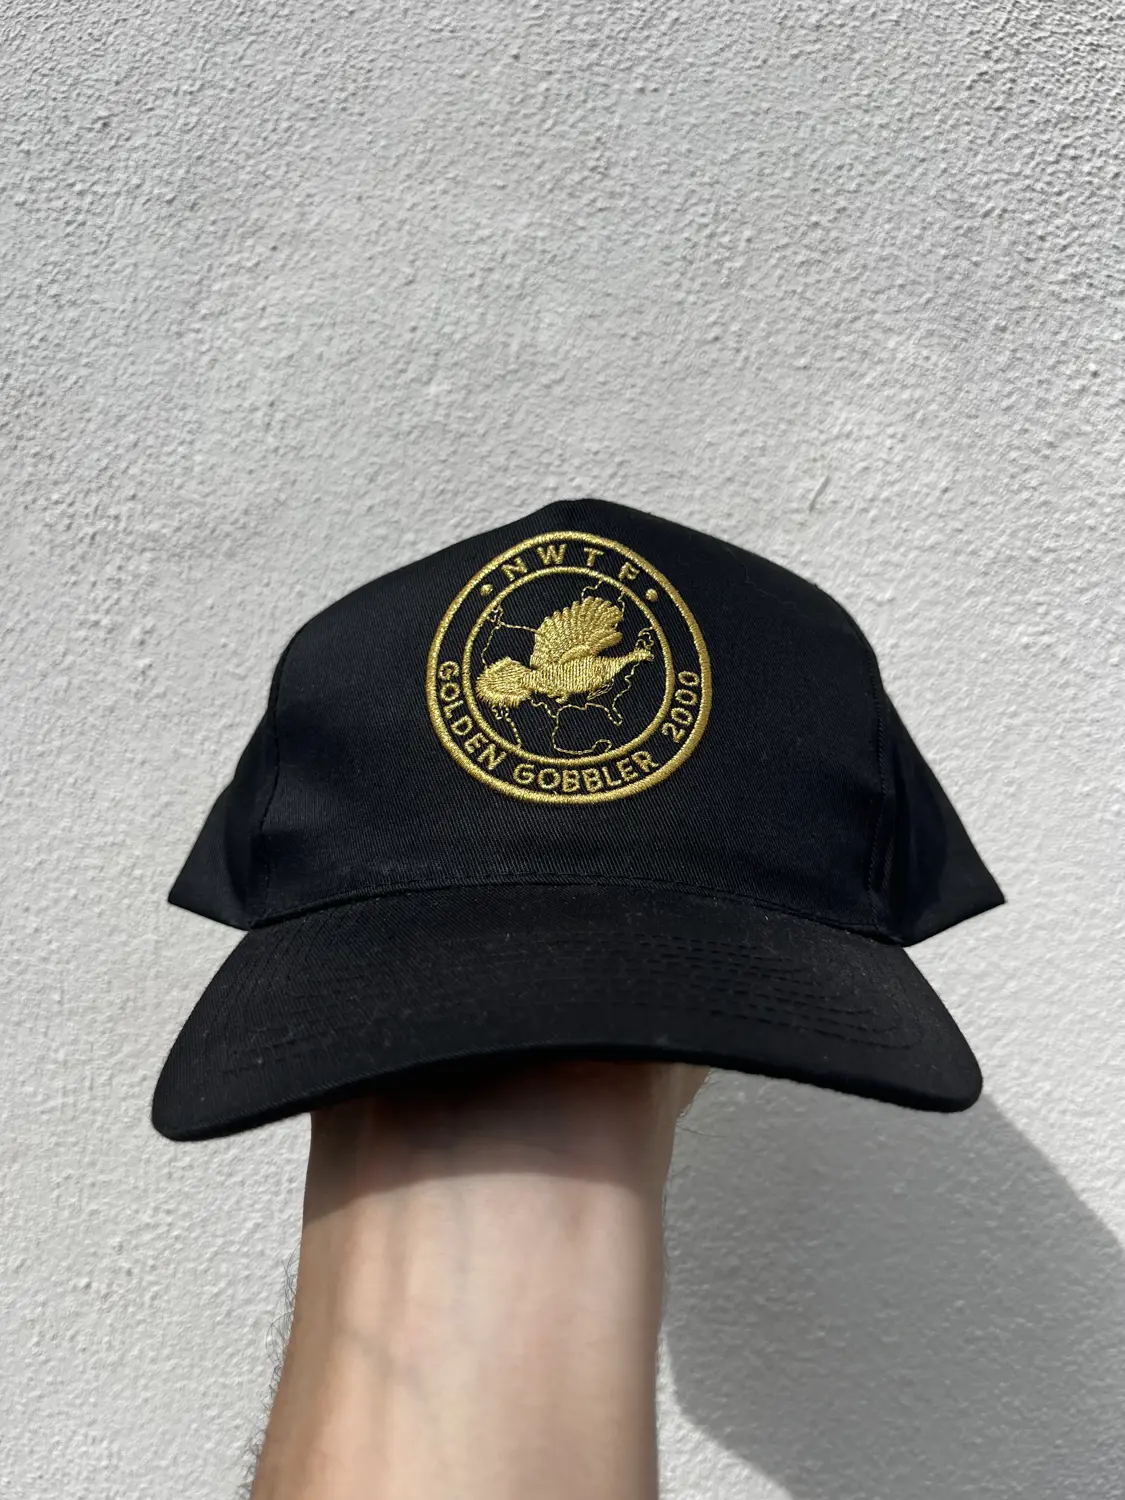 2000 NWTF Golden Gobbler SnapBack Hat